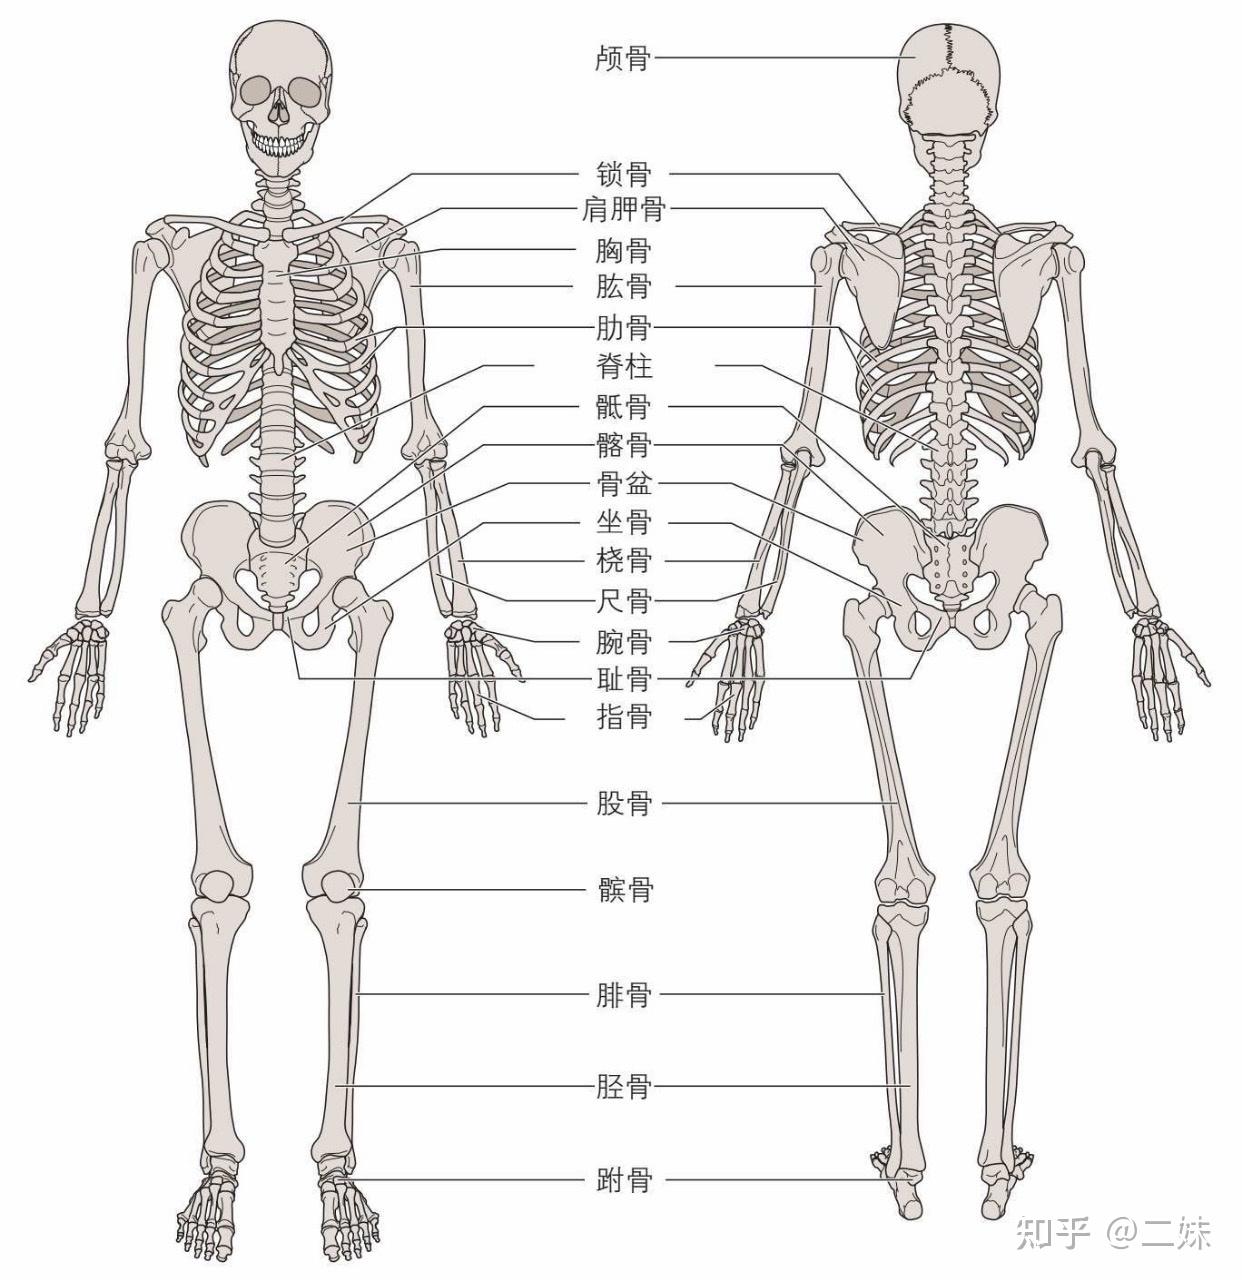 骨骼会为身体提供结构支撑,充当允许身体节段和关节运动的杠杆系统